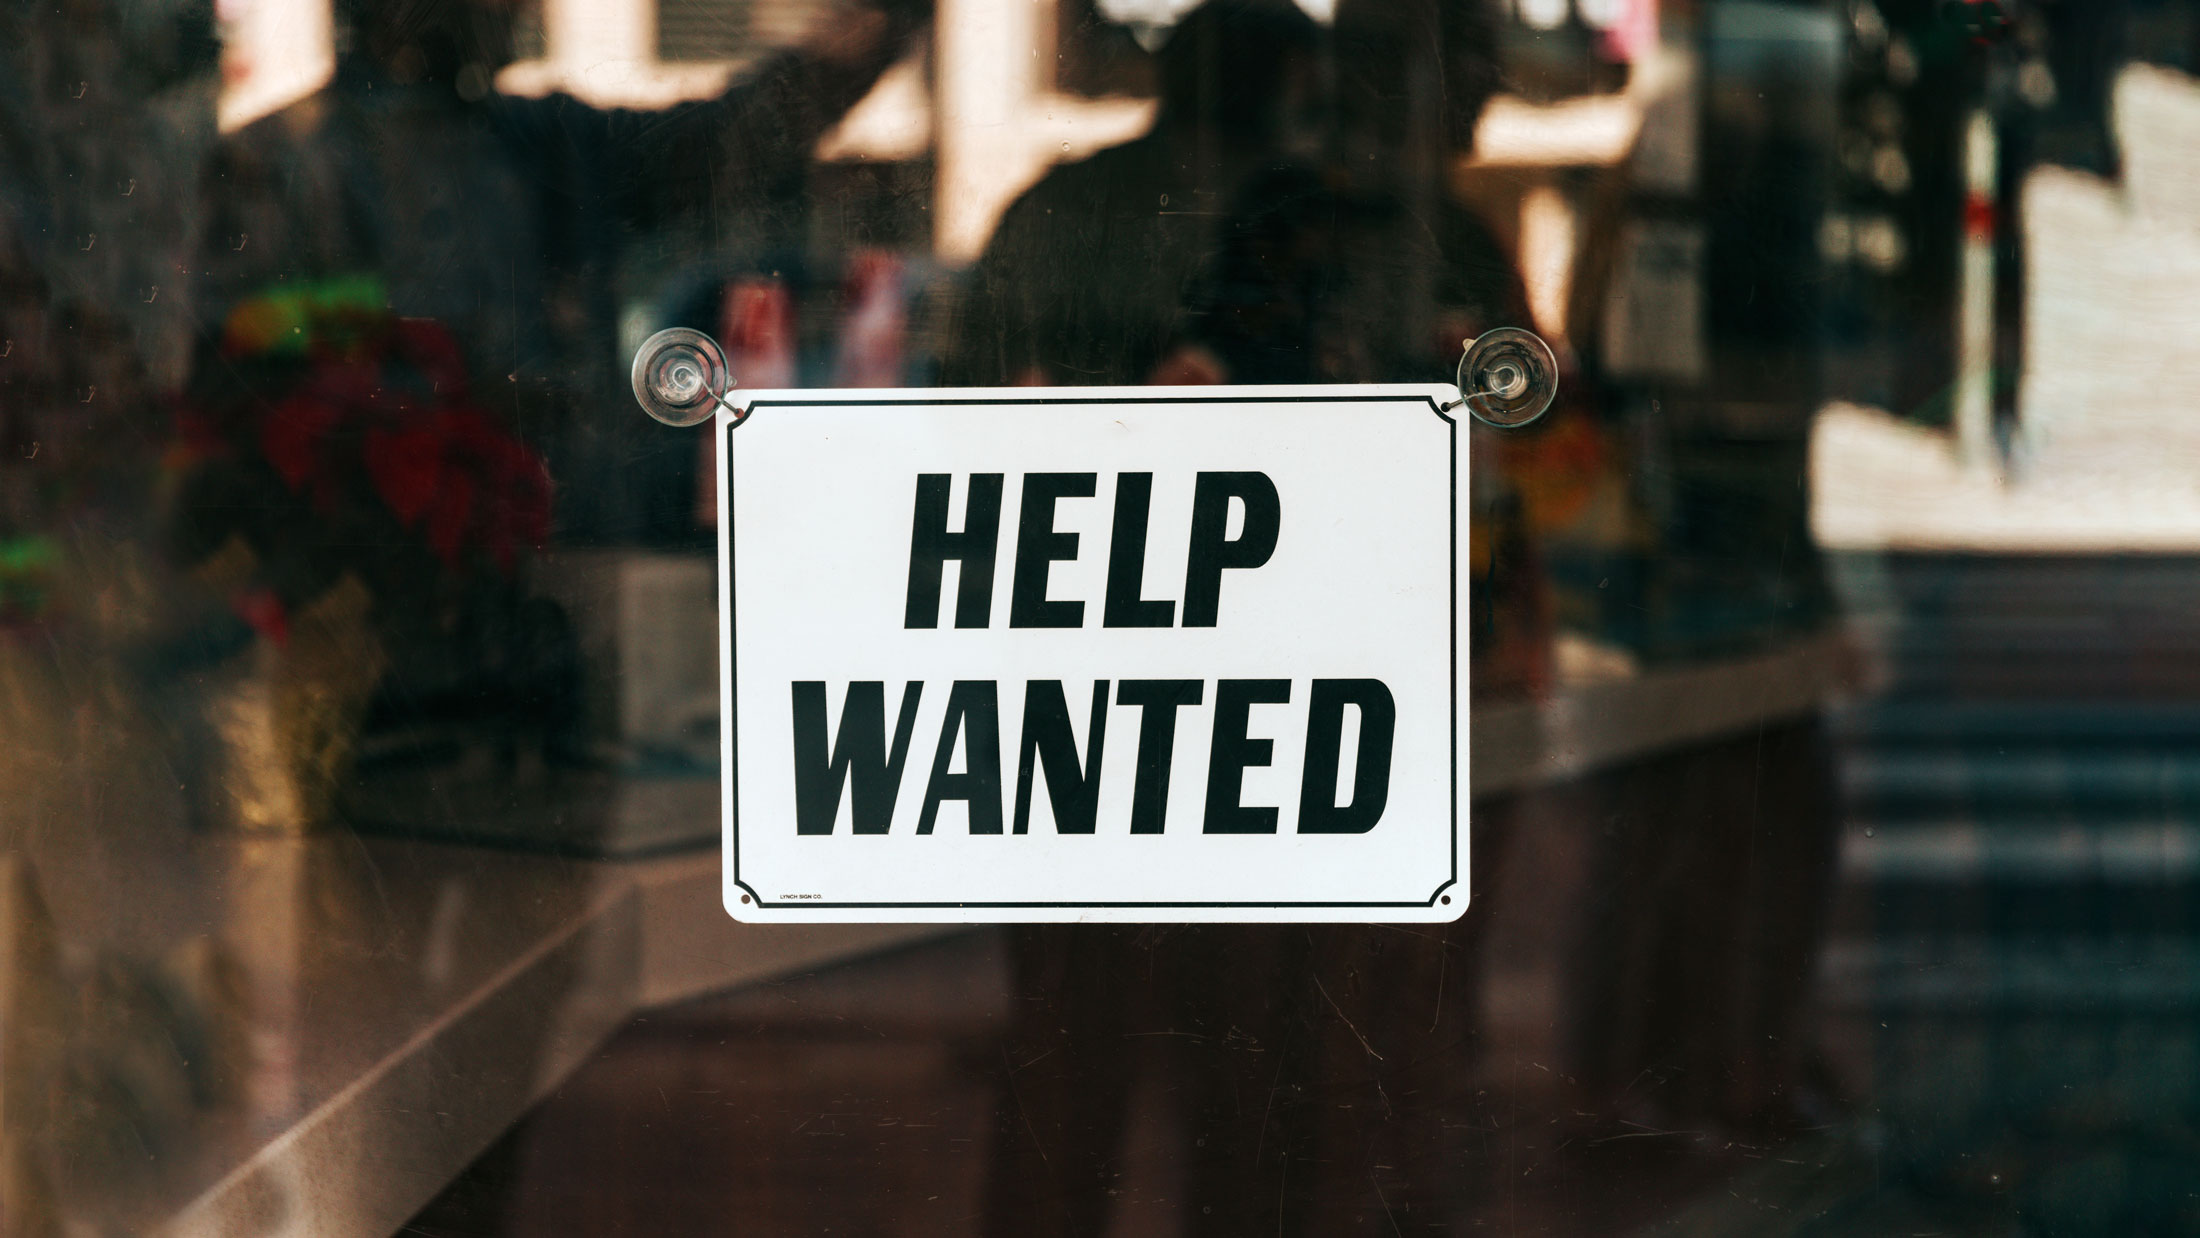 Symbolbild zum Employer Branding: Ein Schild mit der Aufschrift "Help wanted" steht in einem Schaufenster.